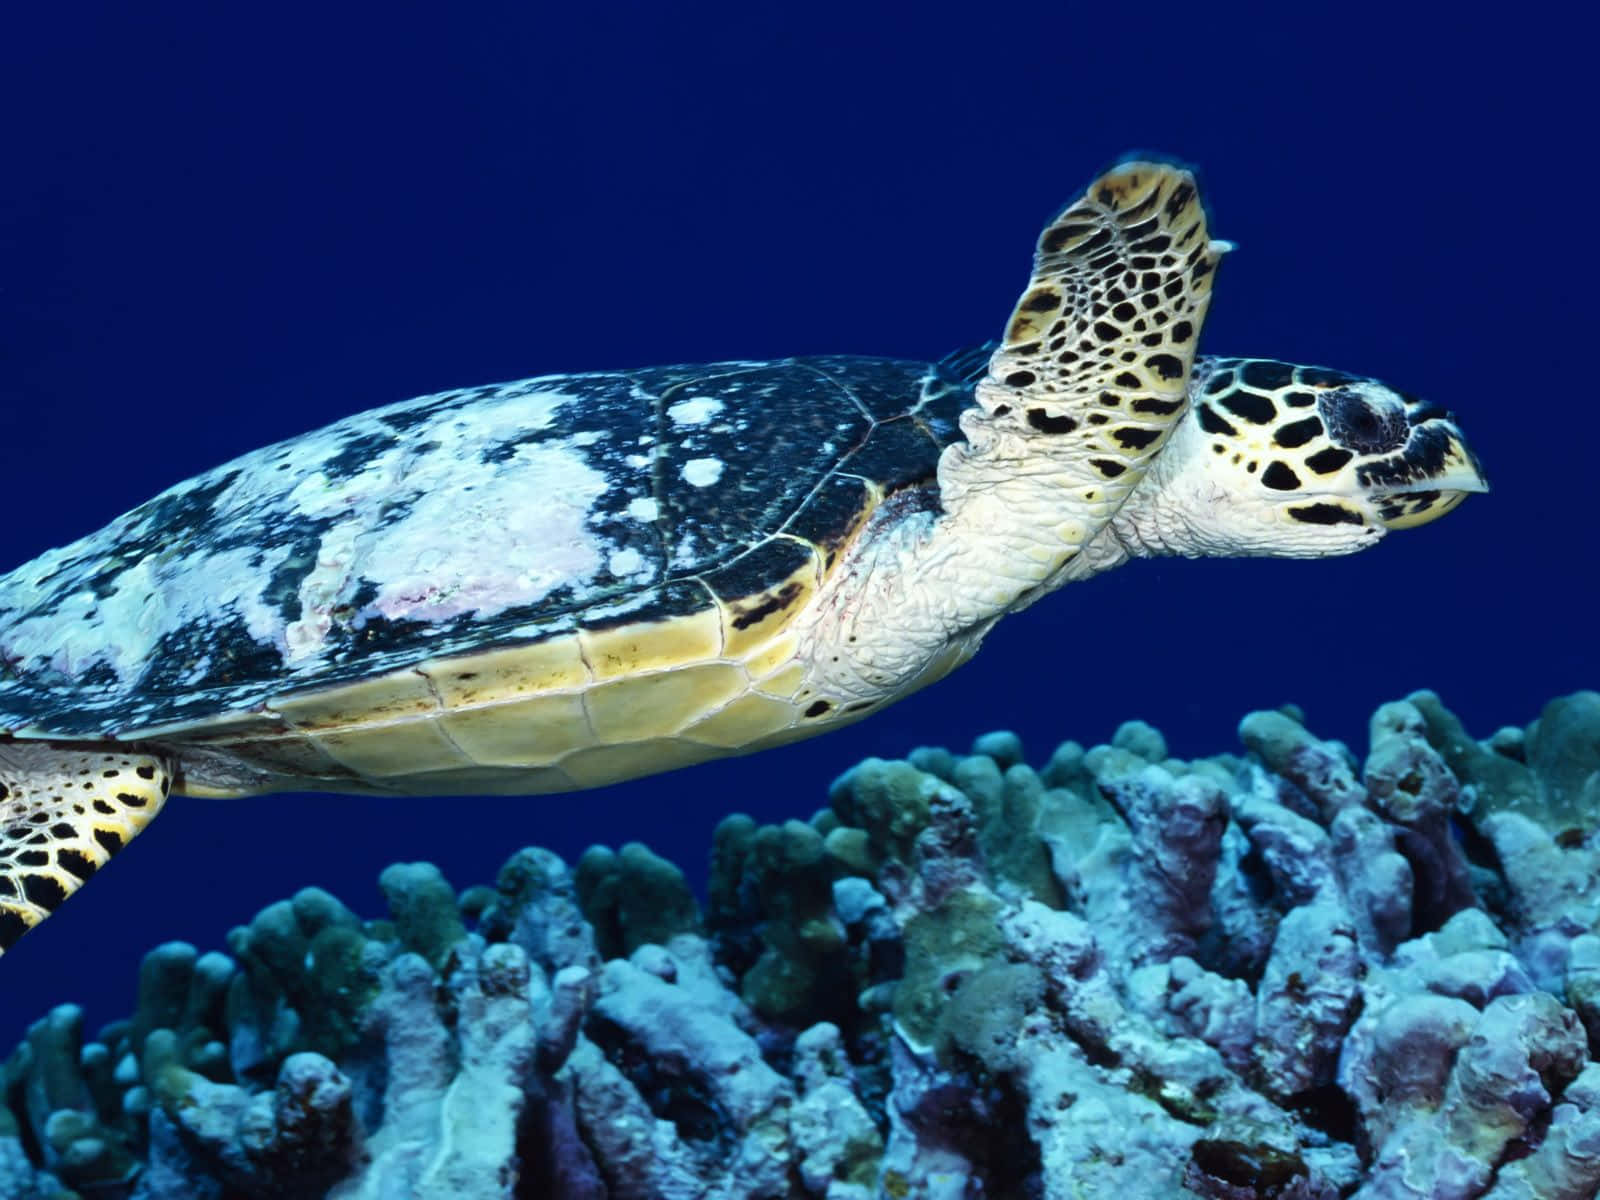 Enskildpadde, Der Svømmer Over Koraller I Oceanet.